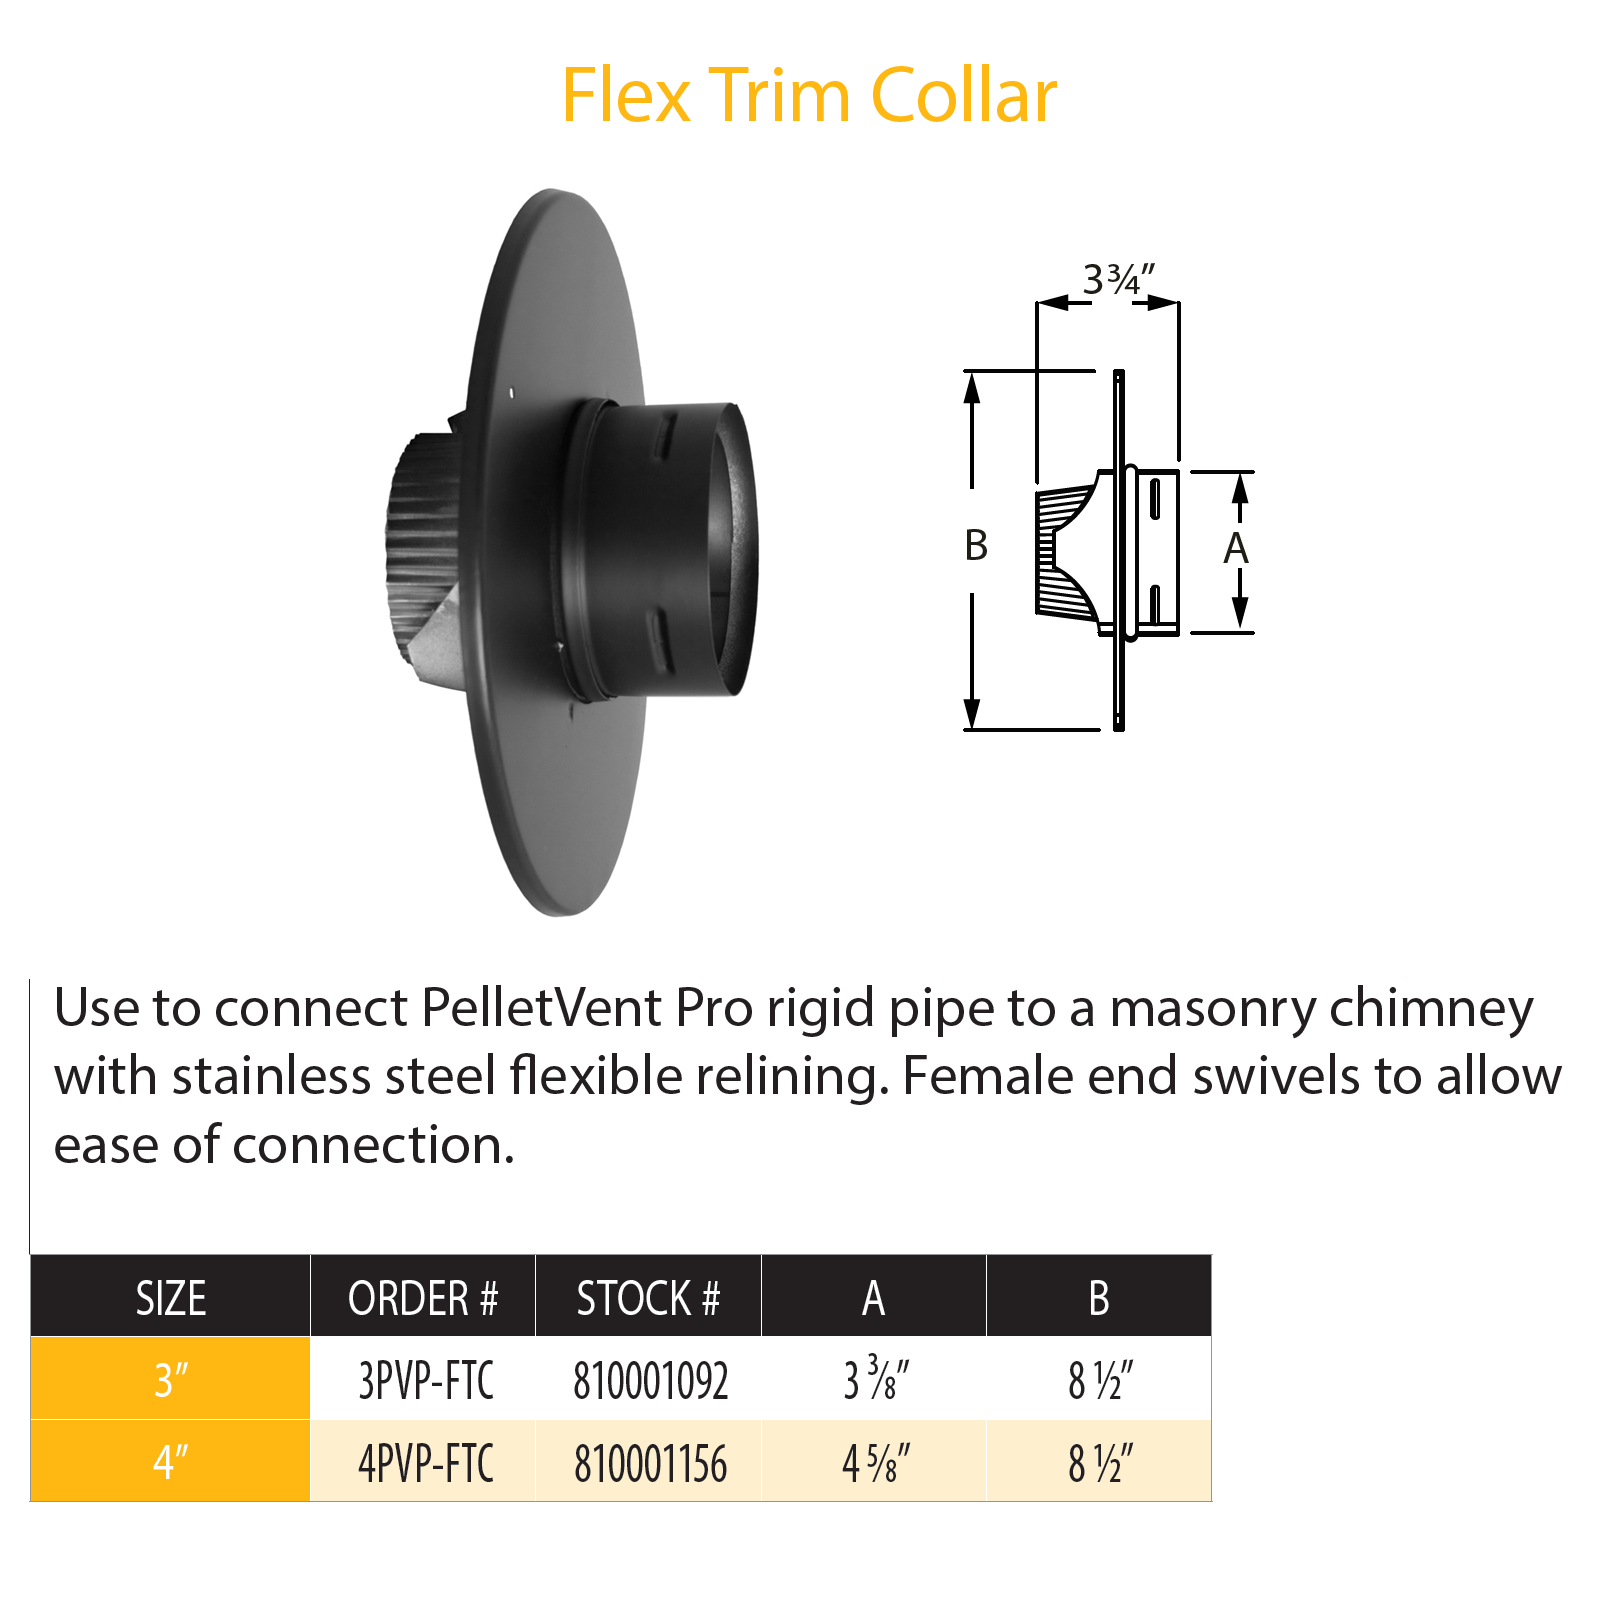 DuraVent Pellet Vent Pro Flex Trim Collar | 4PVP-FTC